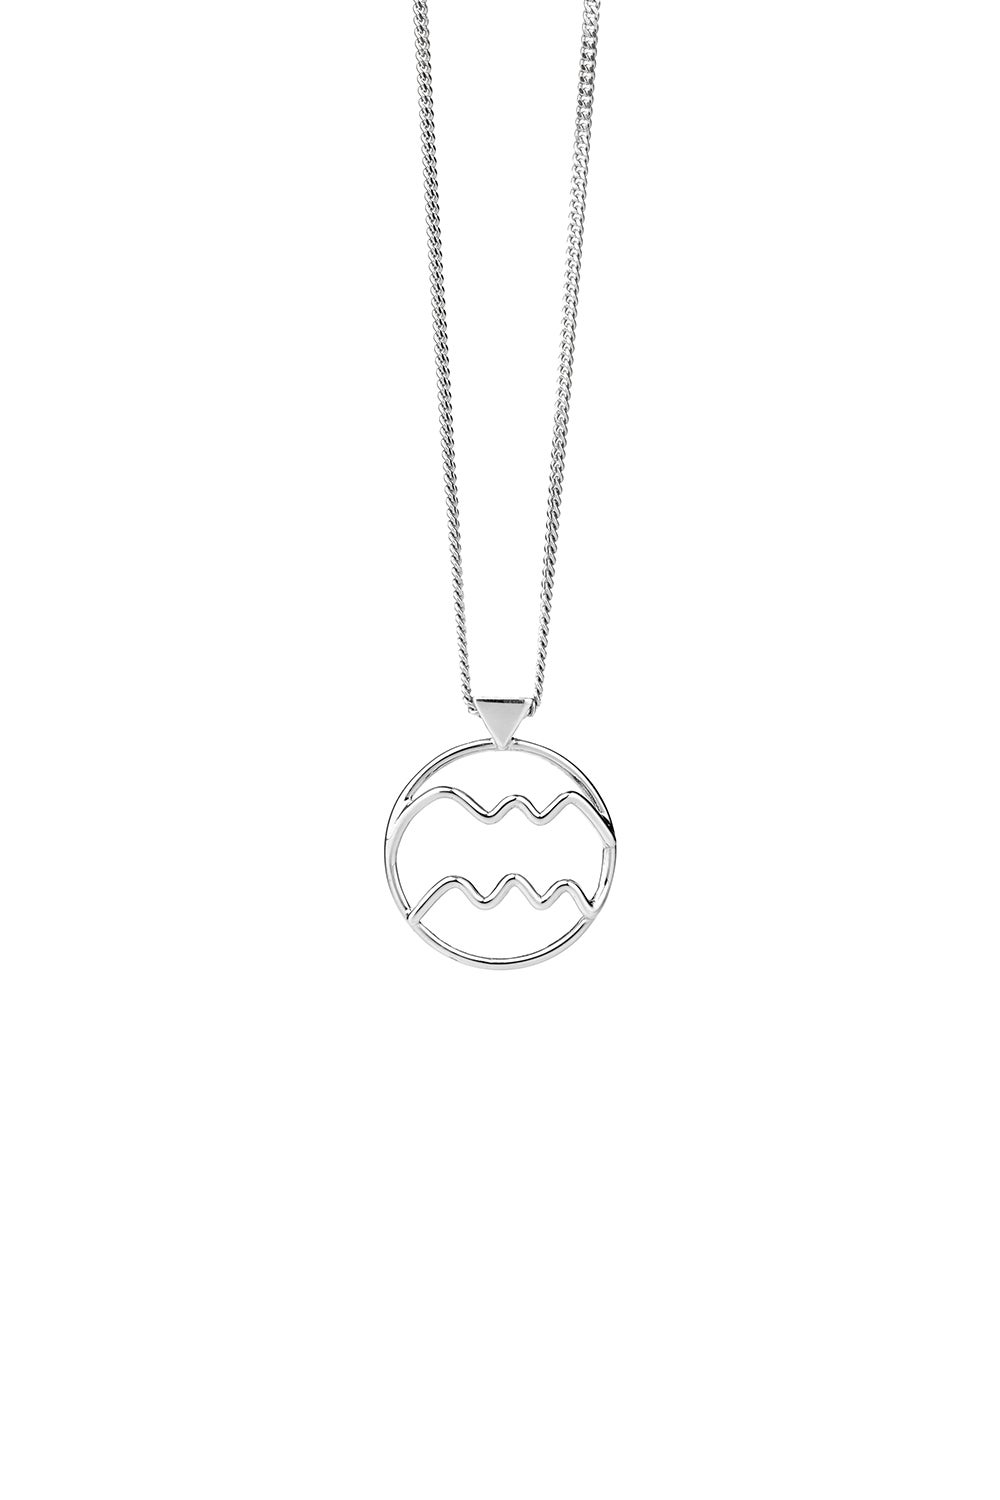 Aquarius Necklace Silver